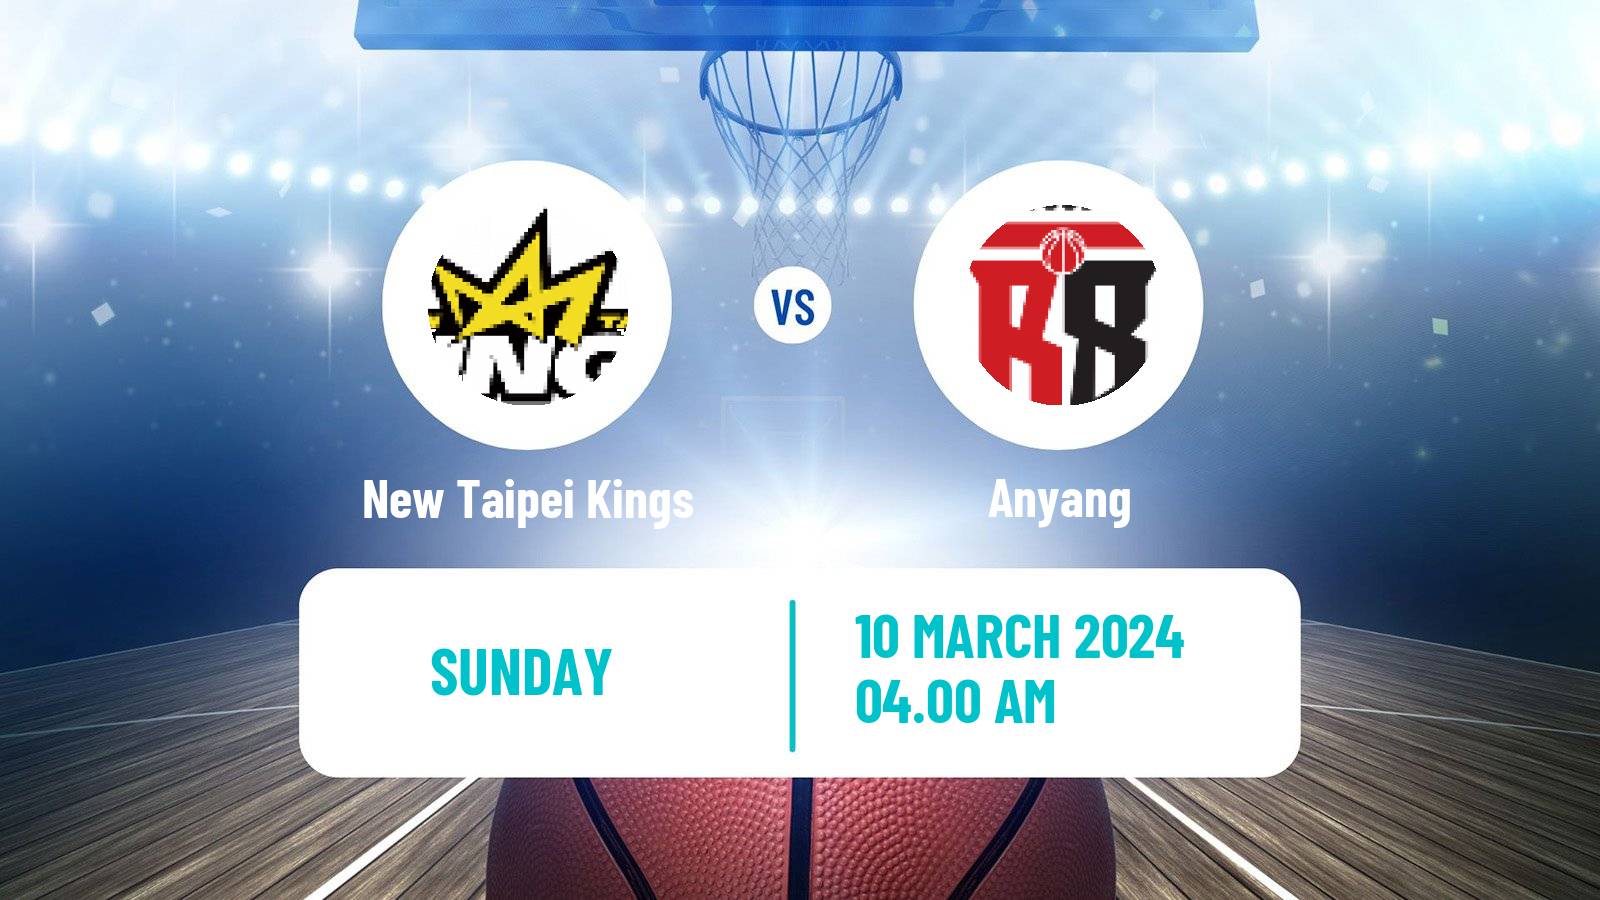 Basketball EASL Basketball New Taipei Kings - Anyang